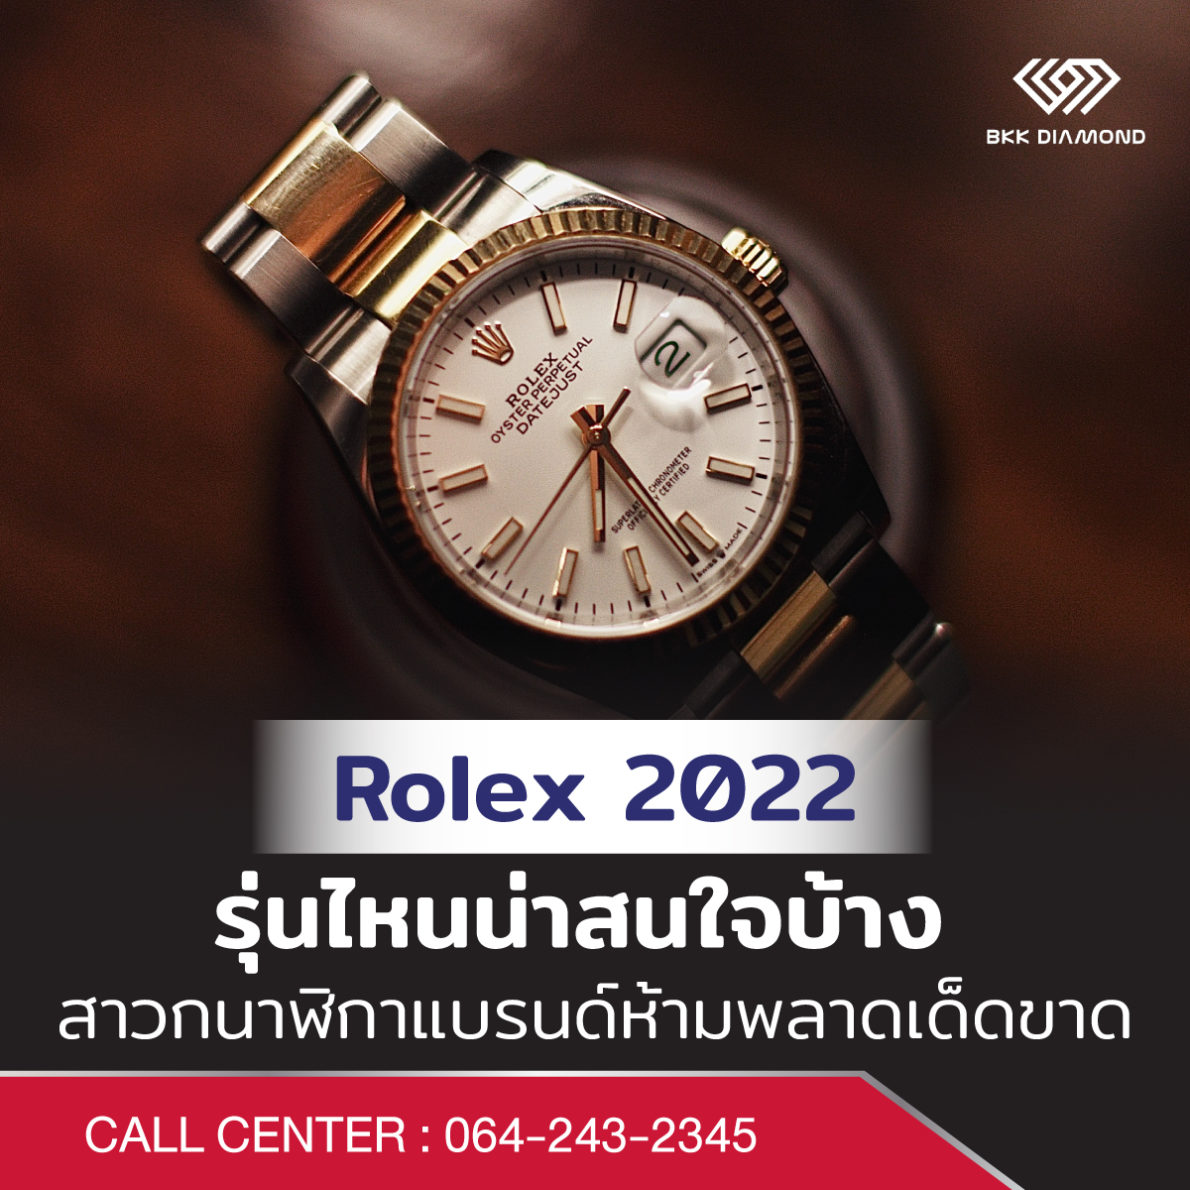 Rolex 2022 รุ่นไหนน่าสนใจบ้าง สาวกนาฬิกาแบรนด์ห้ามพลาดเด็ดขาด